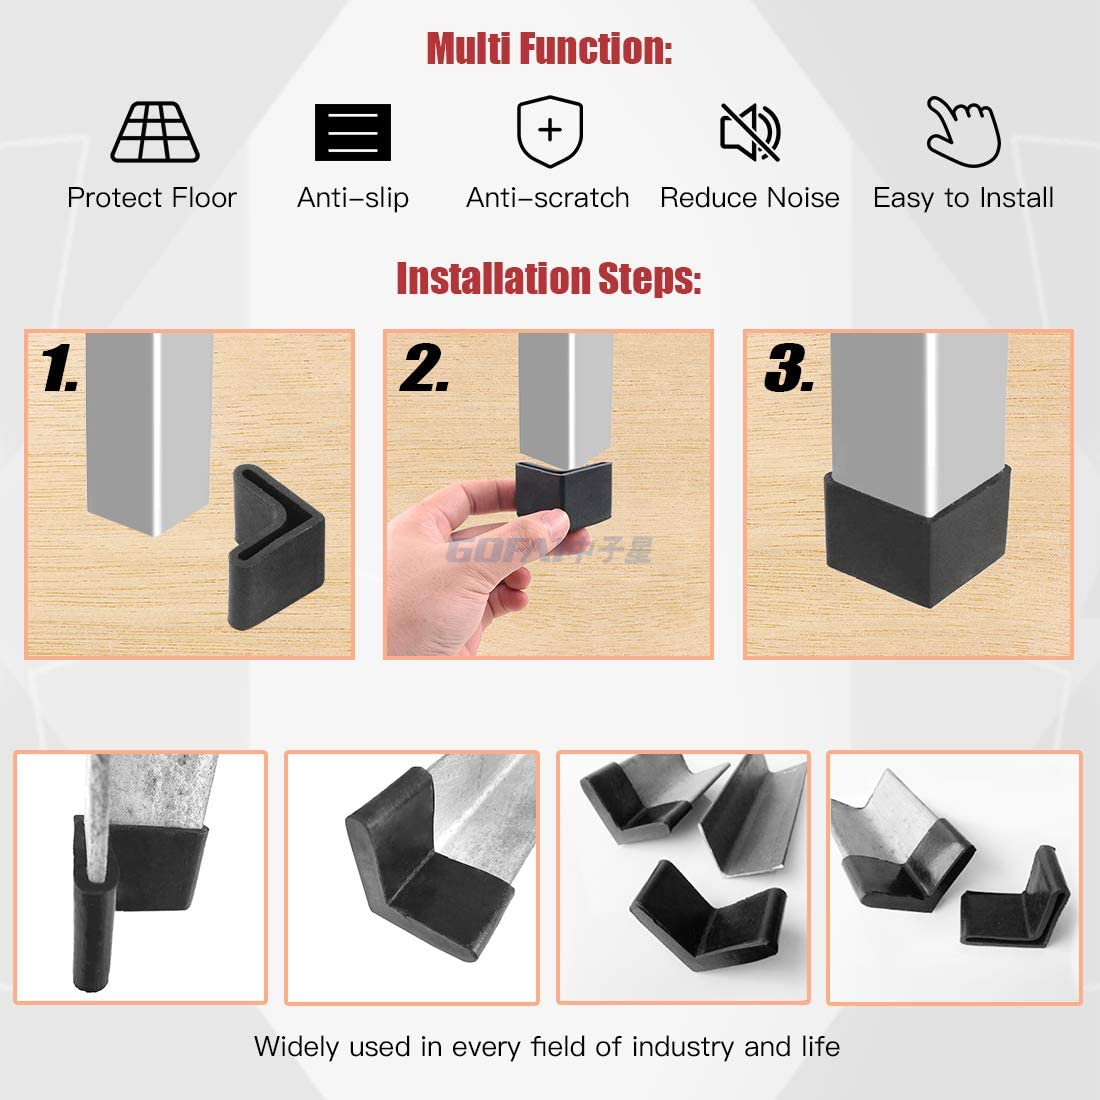 L-Form-Möbel-Winkel-Anti-Rutsch-Dreieck-Gummi-Fußpolster-Beinabdeckungen für Metallbeine